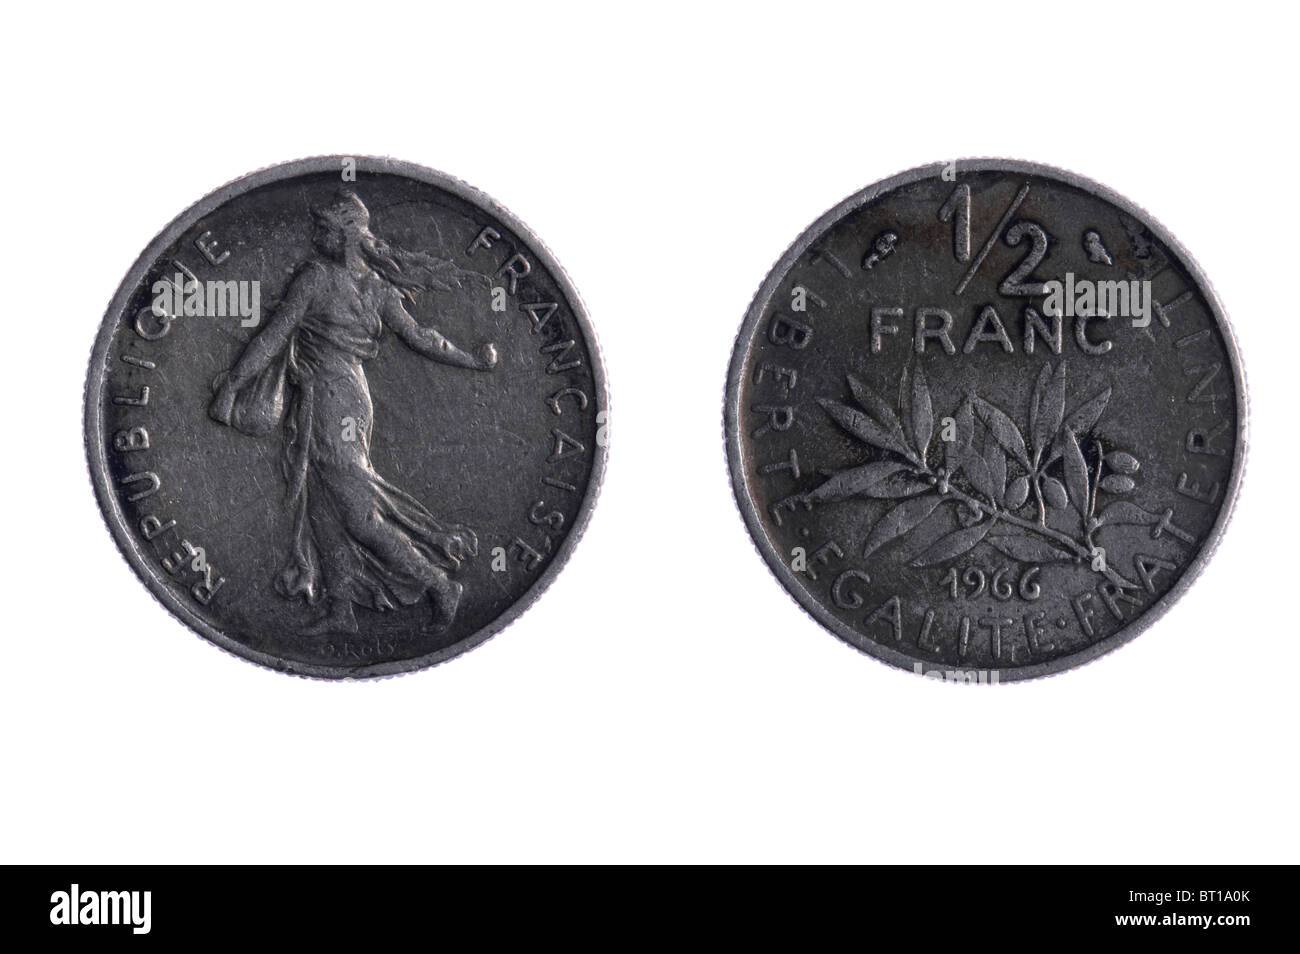 Objekt auf weiß - Franken-Münzen hautnah Stockfoto